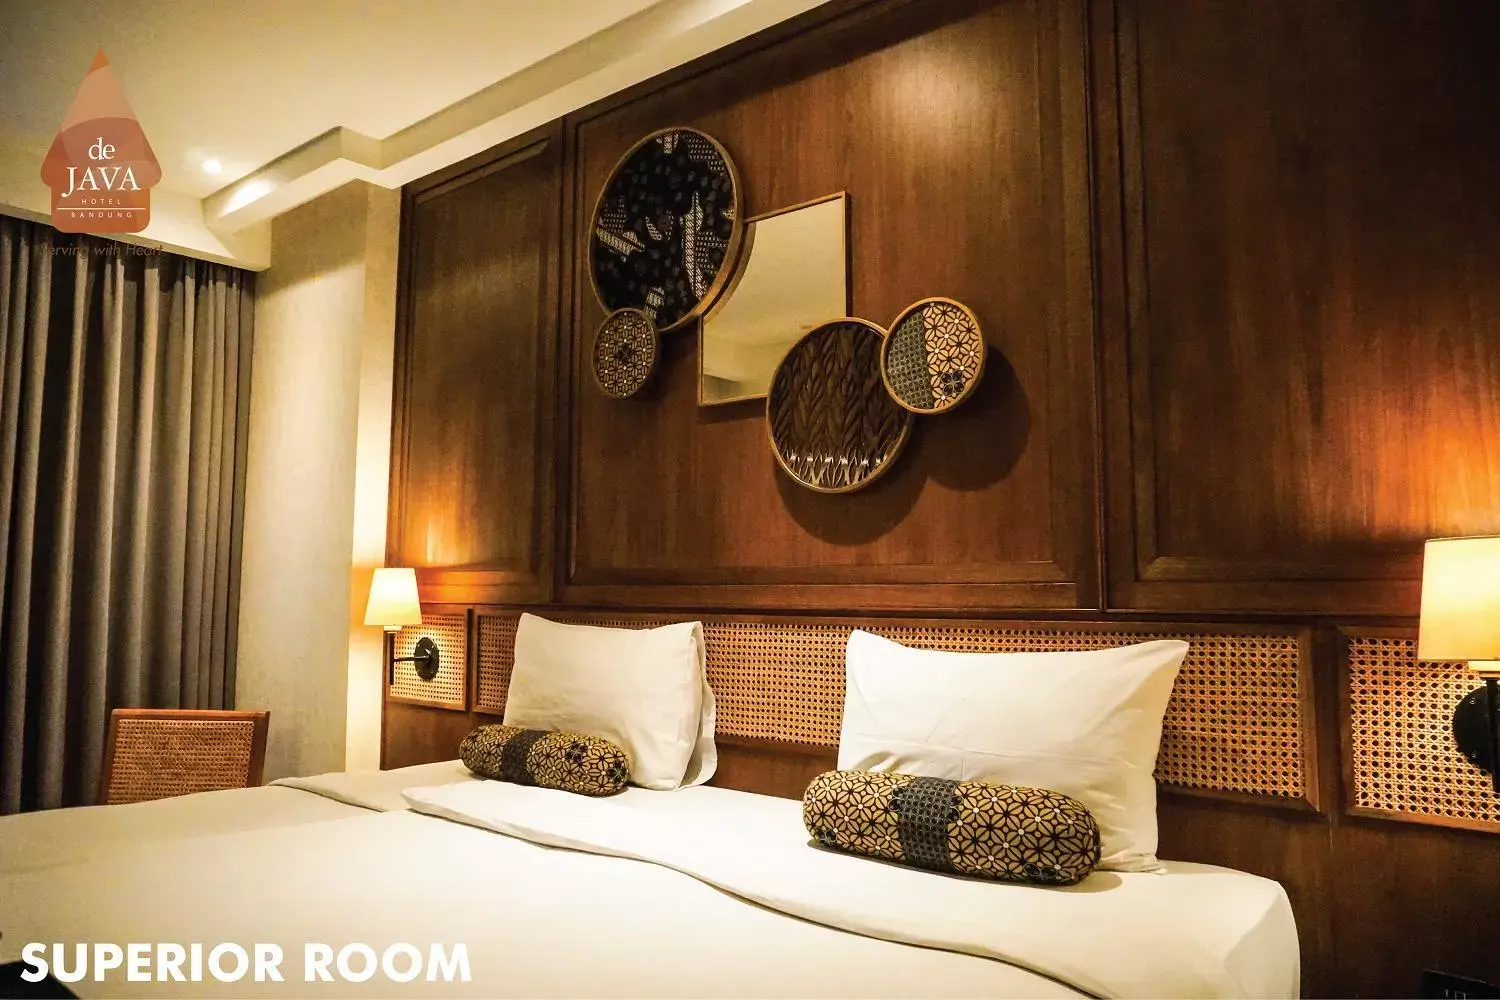 Bedroom, Bed in de JAVA Hotel Bandung